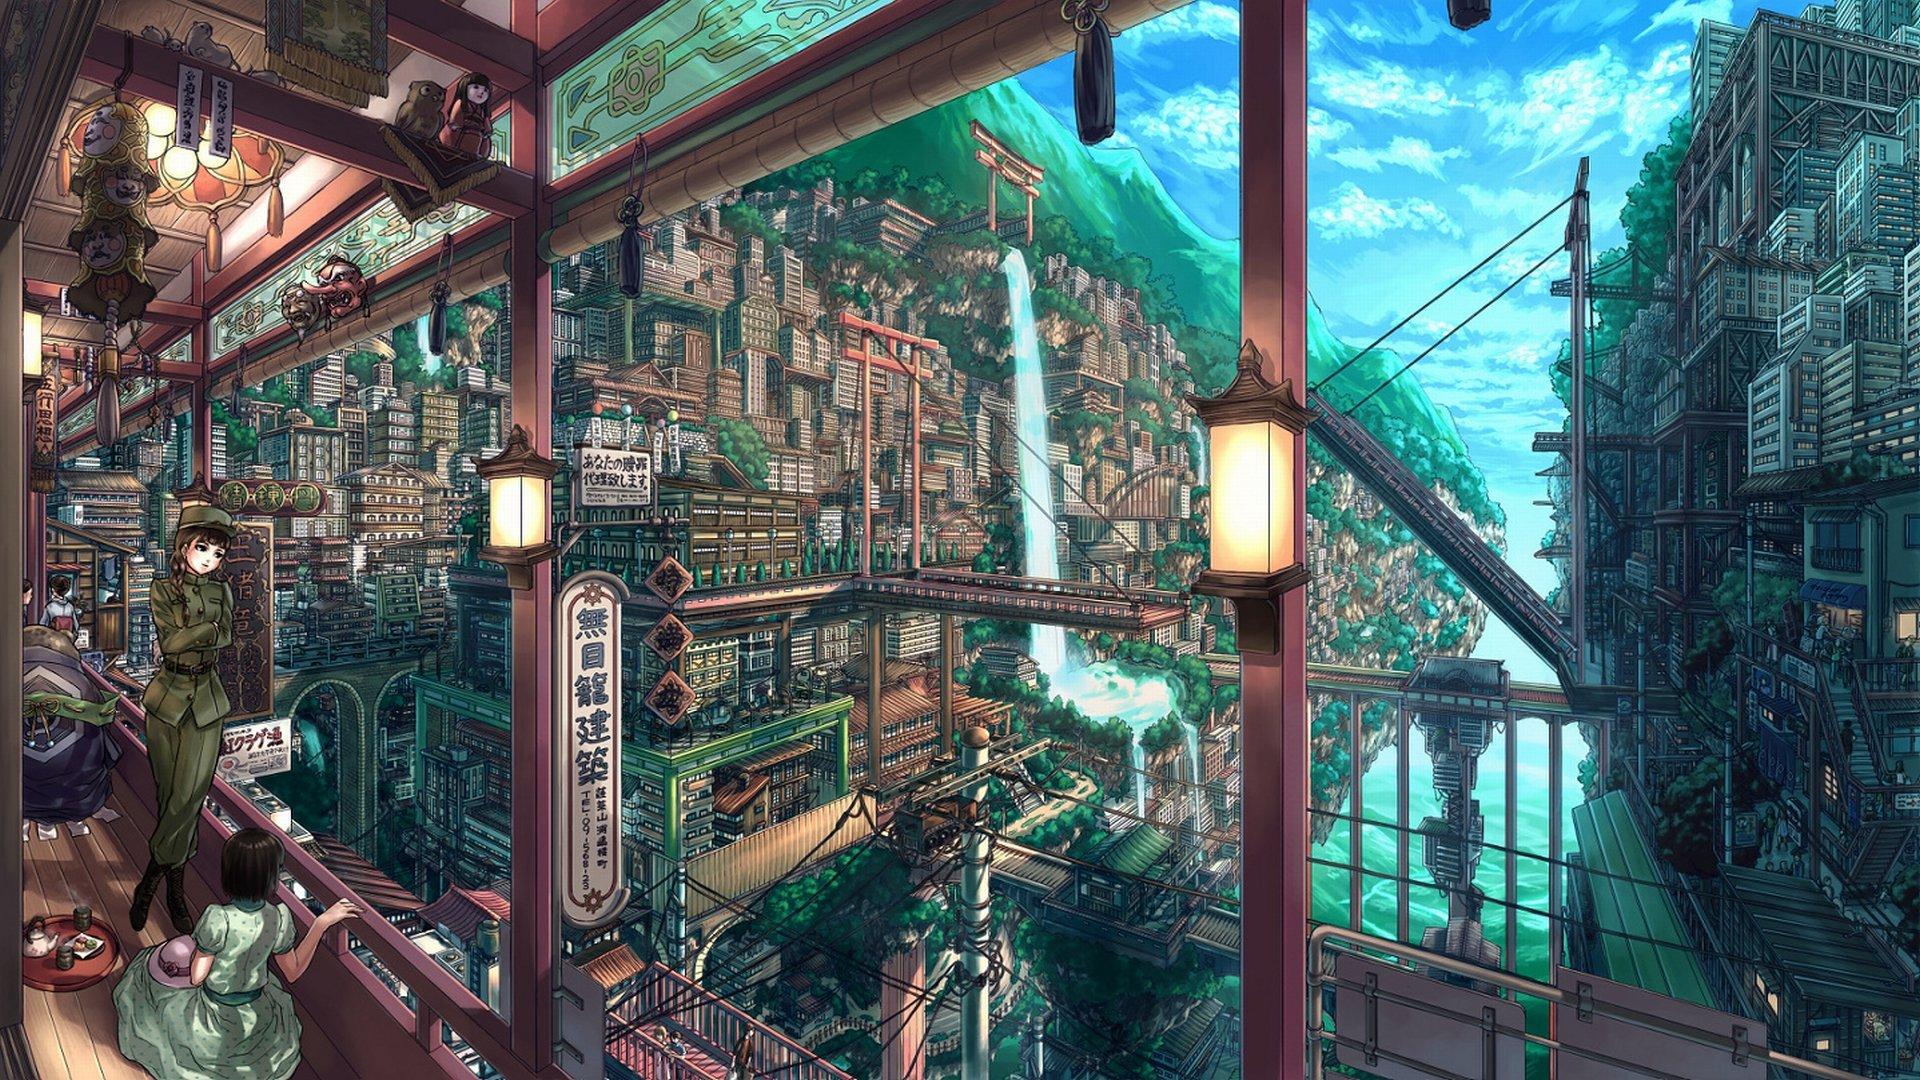 Anime Fan Art wallpaper 1920x1080 Full HD (1080p) desktop background